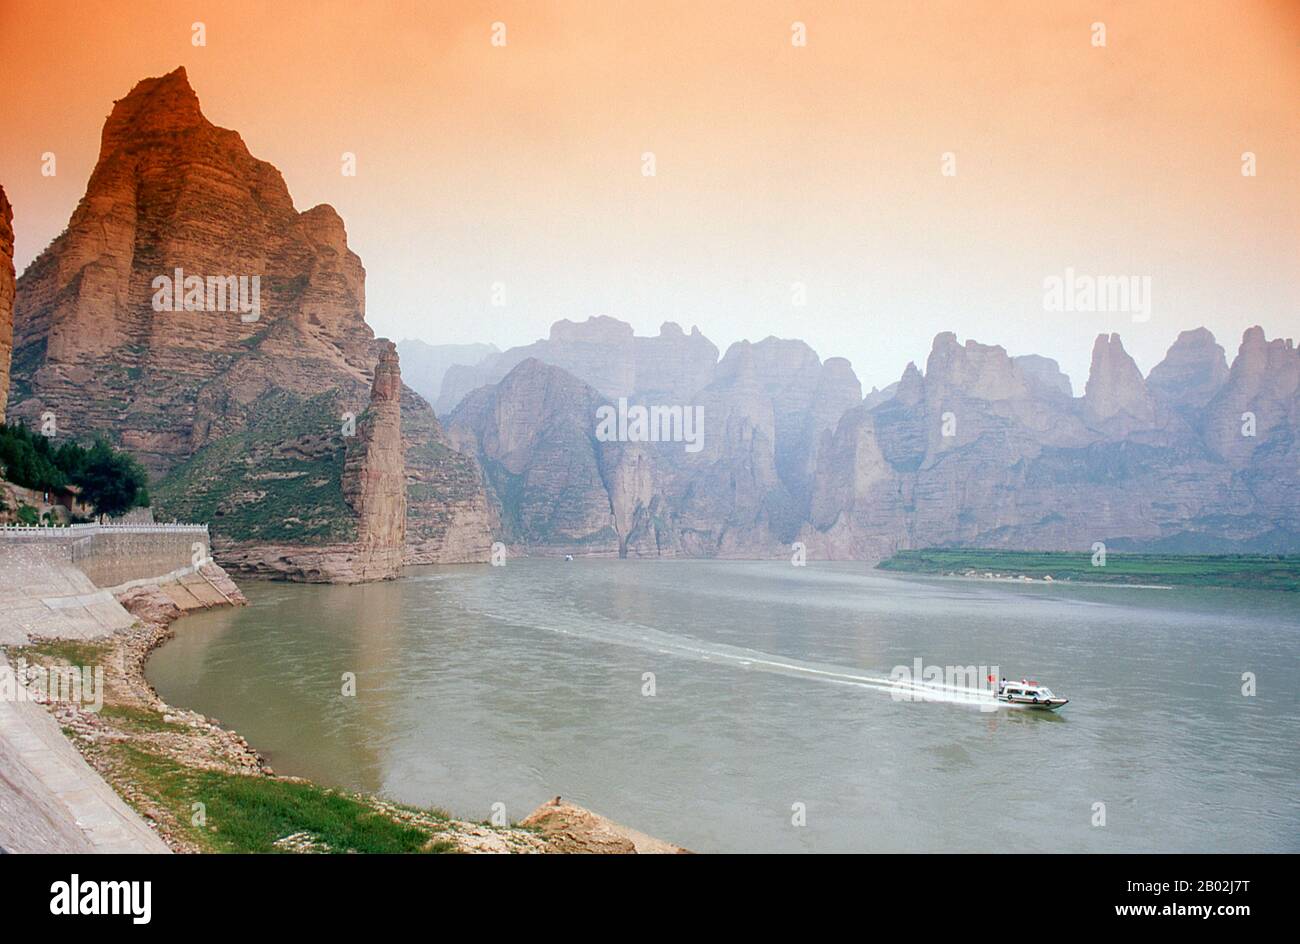 La rivière jaune (Huang He) est la voie navigable la plus importante de Chine. La région autour de la confluence des rivières Huang He et Wei a formé le berceau de la civilisation chinoise. La rivière est la troisième rivière la plus longue d'Asie, qui suit la rivière Yangtze et la rivière Yenisei, et la sixième plus longue au monde, sur une longueur estimée à 5,464 km (3,395 mi). Banque D'Images